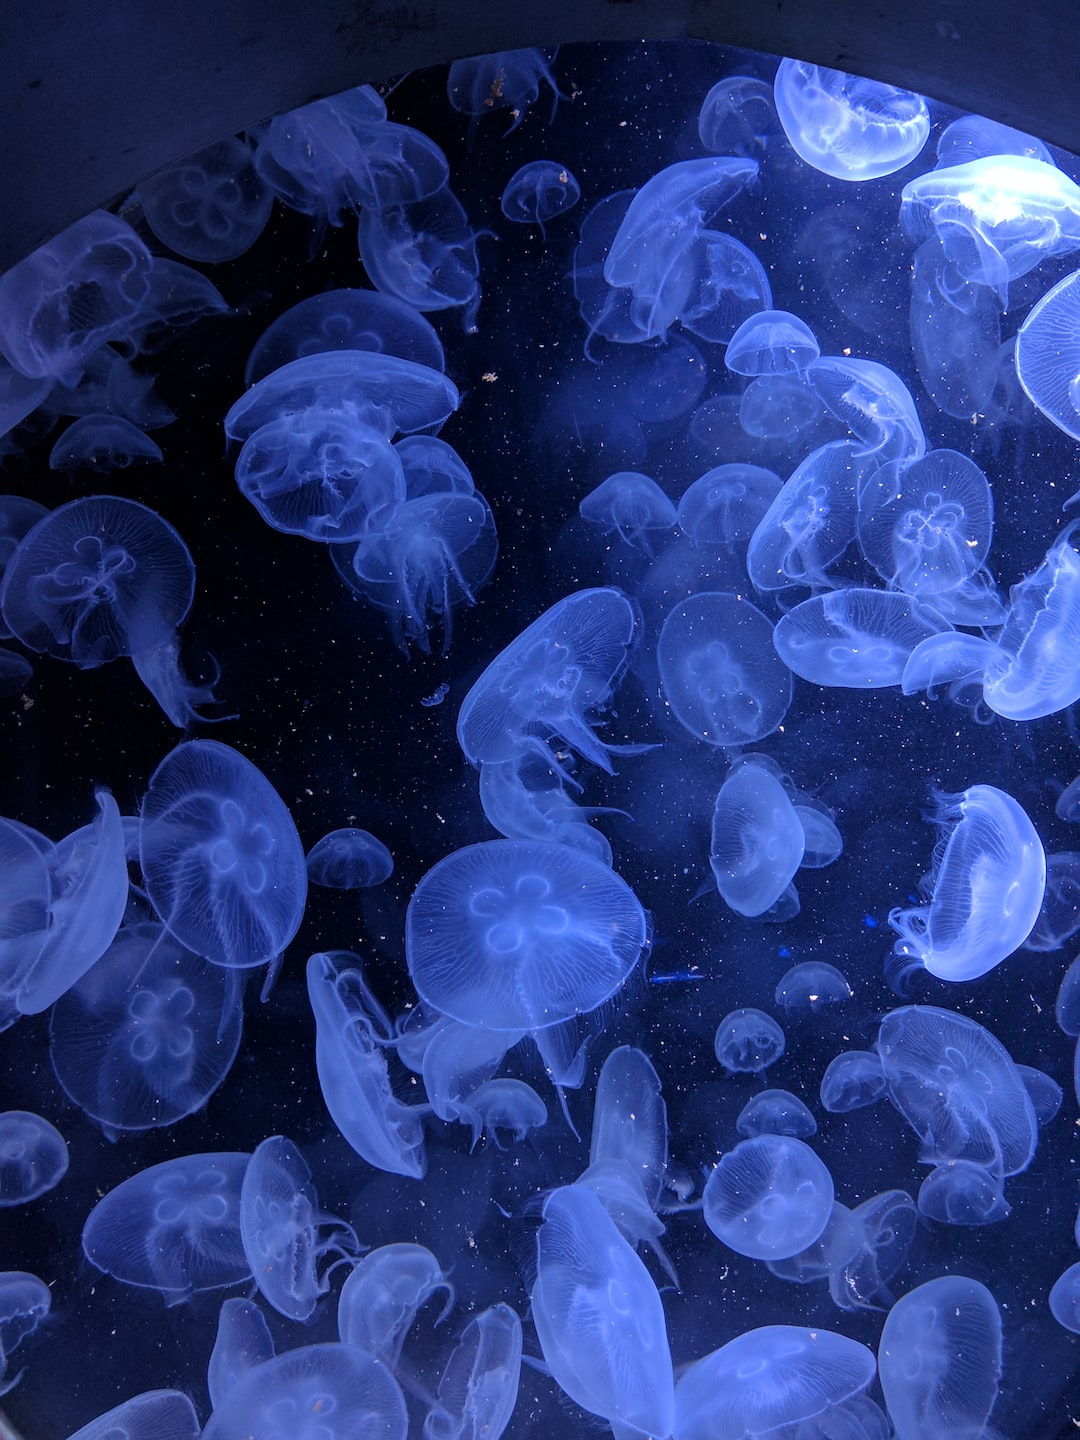 25 wichtige Fragen zu Welche Aquariumschnecken Gibt Es?